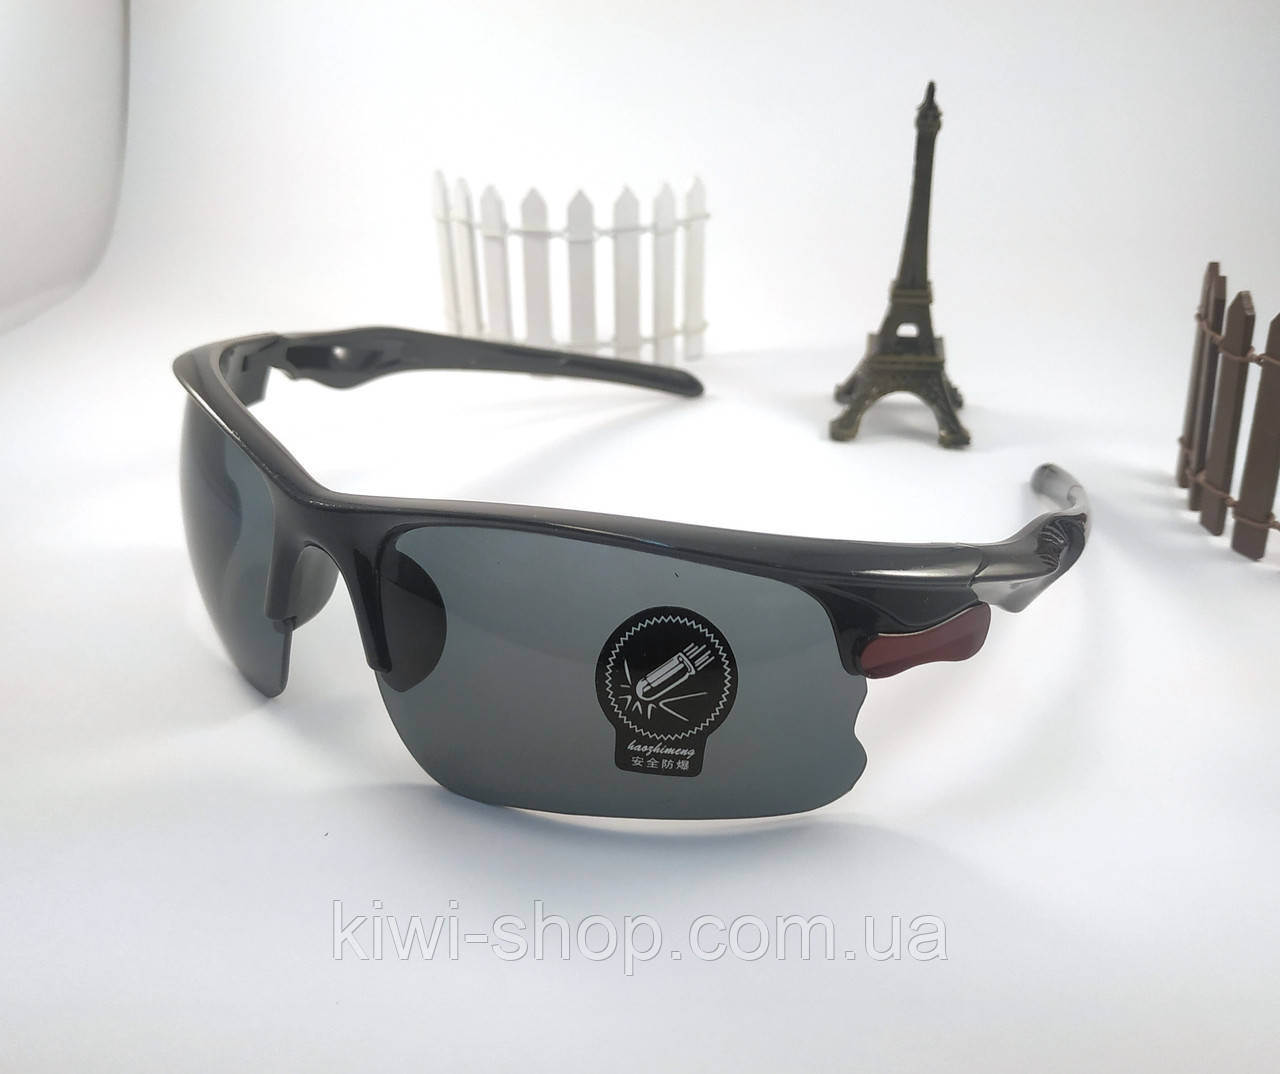 Сонцезахисні спортивні окуляри Robesbon водійські, антивідблиски для денної їзди, спортивні велочки, чорні